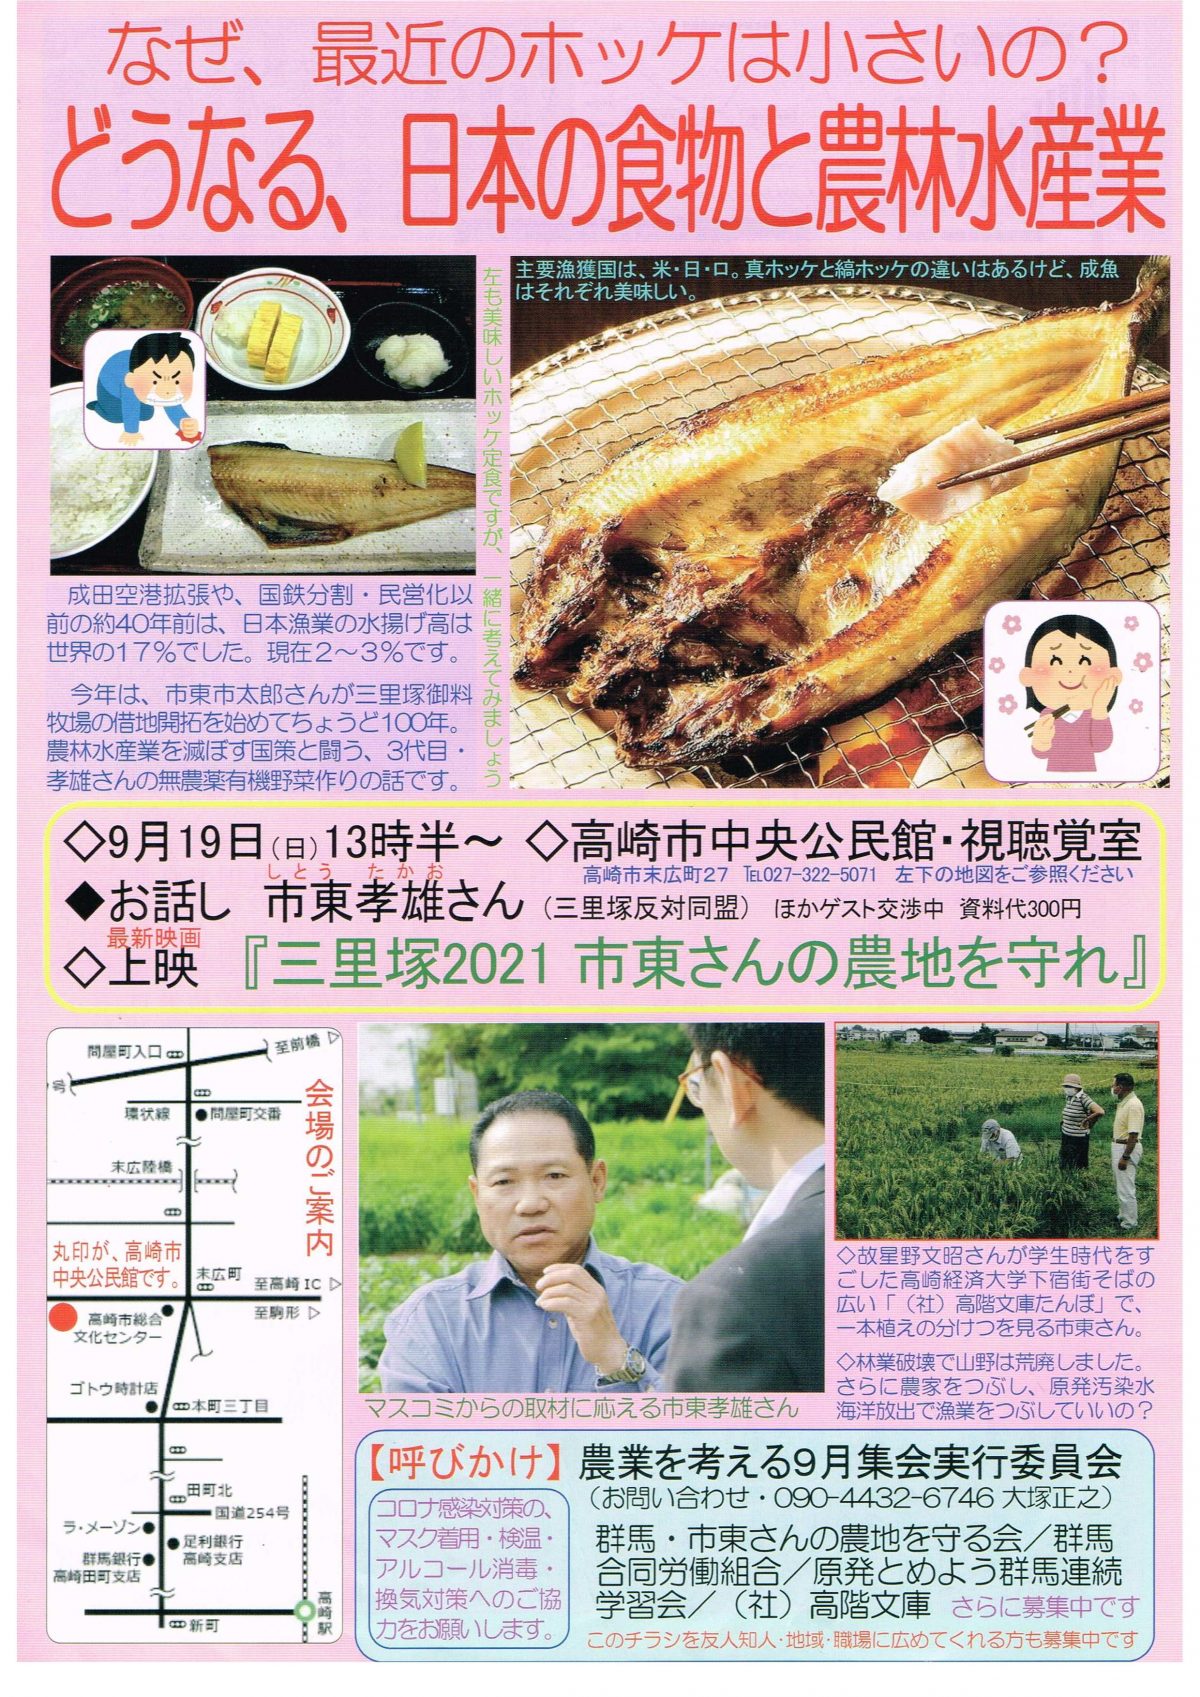 9月19日は三里塚農民・市東孝雄さんを迎え農業を考える高崎集会へ